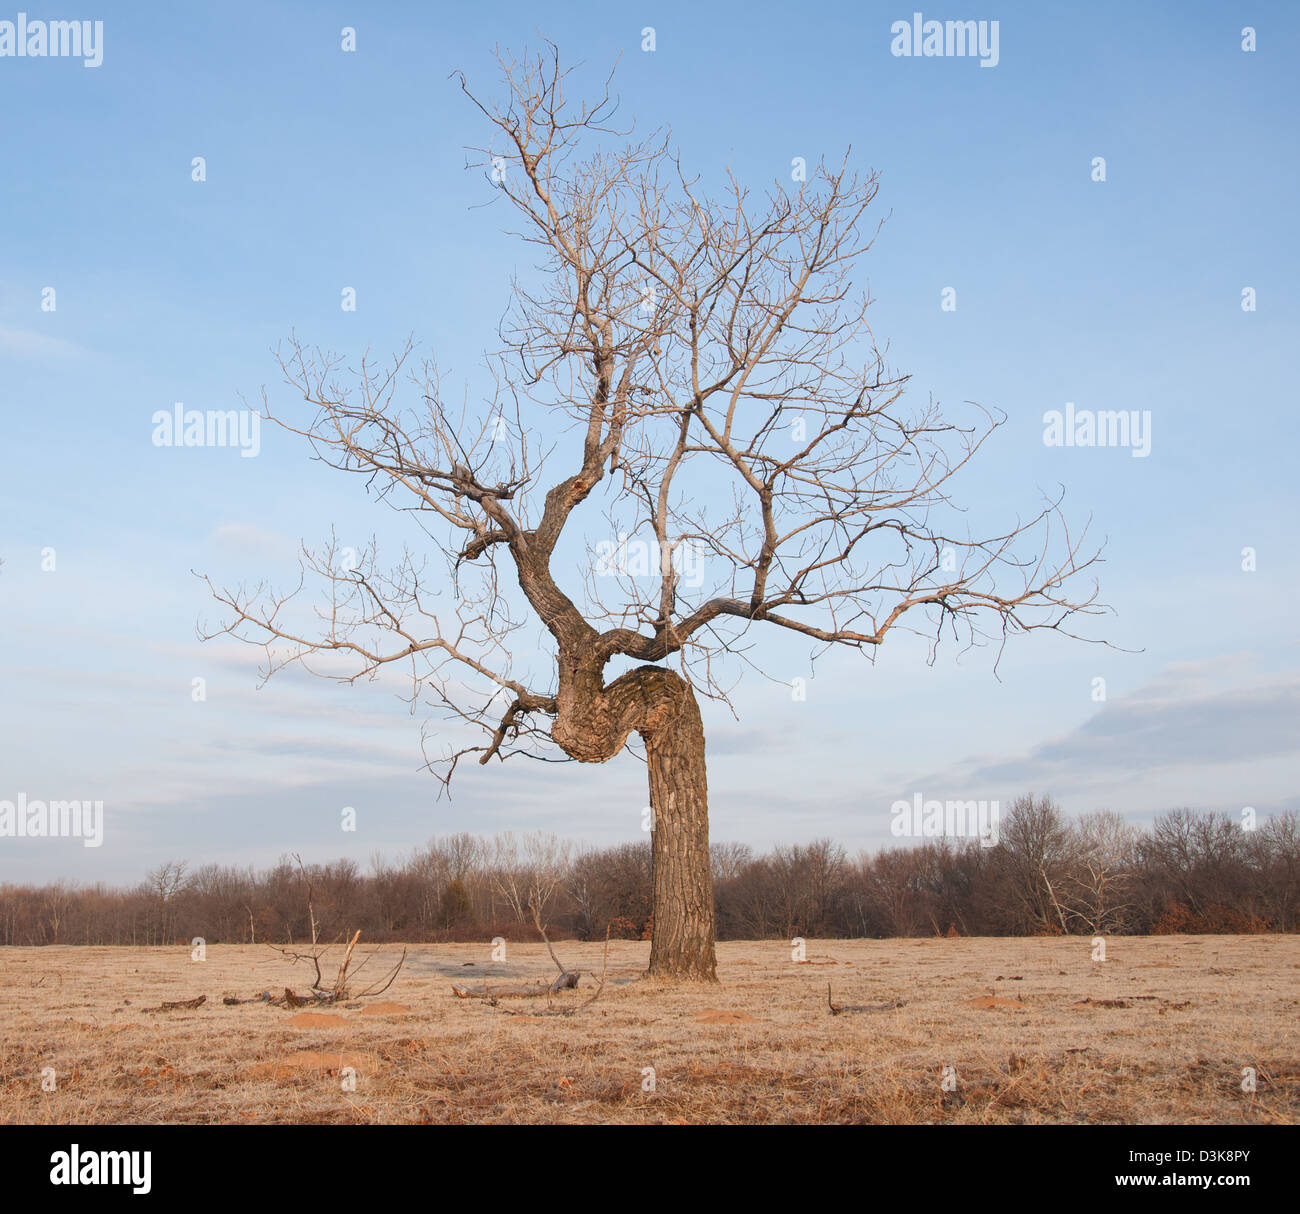 Krummen Baum wächst auf offenem Feld - Konzept der Beharrlichkeit trotz schwieriger Bedingungen Stockfoto